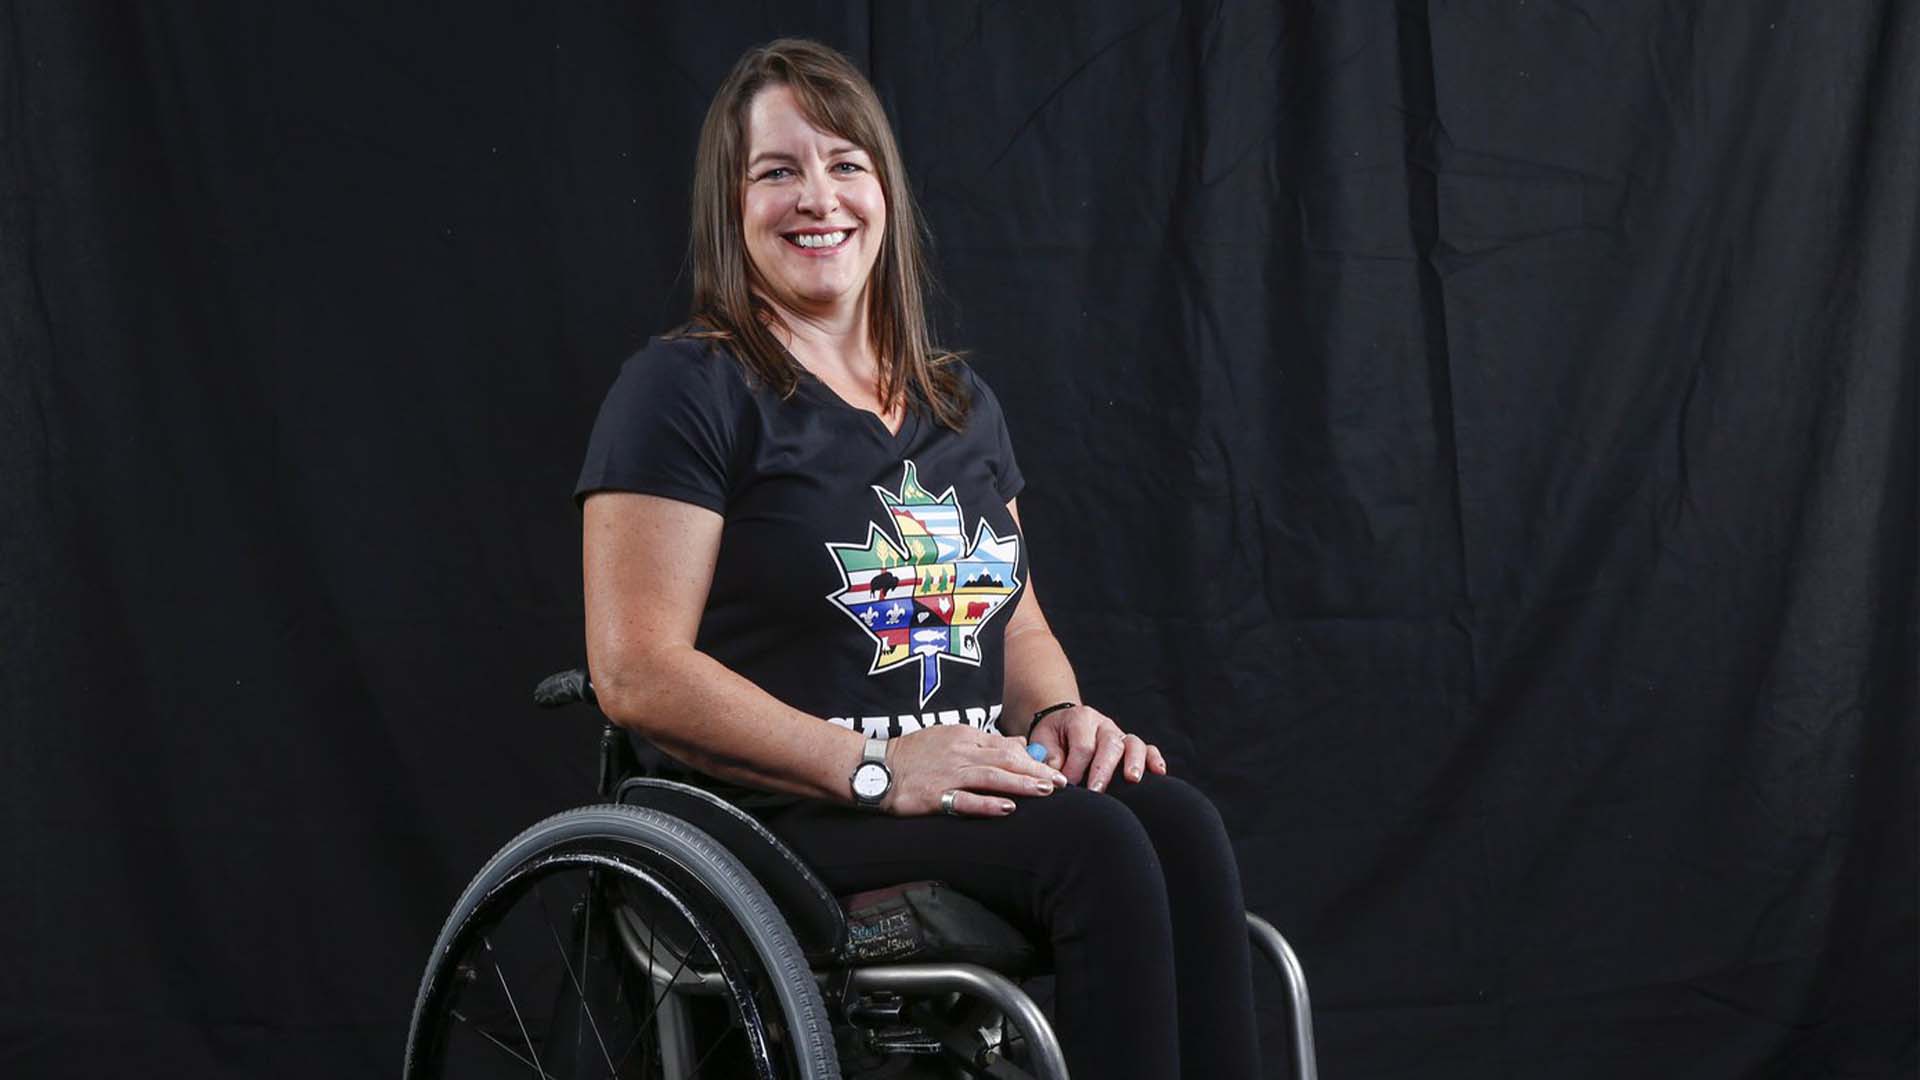 La curleuse en fauteuil roulant Ina Forrest et le joueur de hockey Greg Westlake porteront le drapeau du Canada lors de la cérémonie d'ouverture des Jeux paralympiques d'hiver, vendredi. Forrest pose pour une photo au Sommet paralympique à Calgary, en Alberta, le lundi 5 juin 2017.